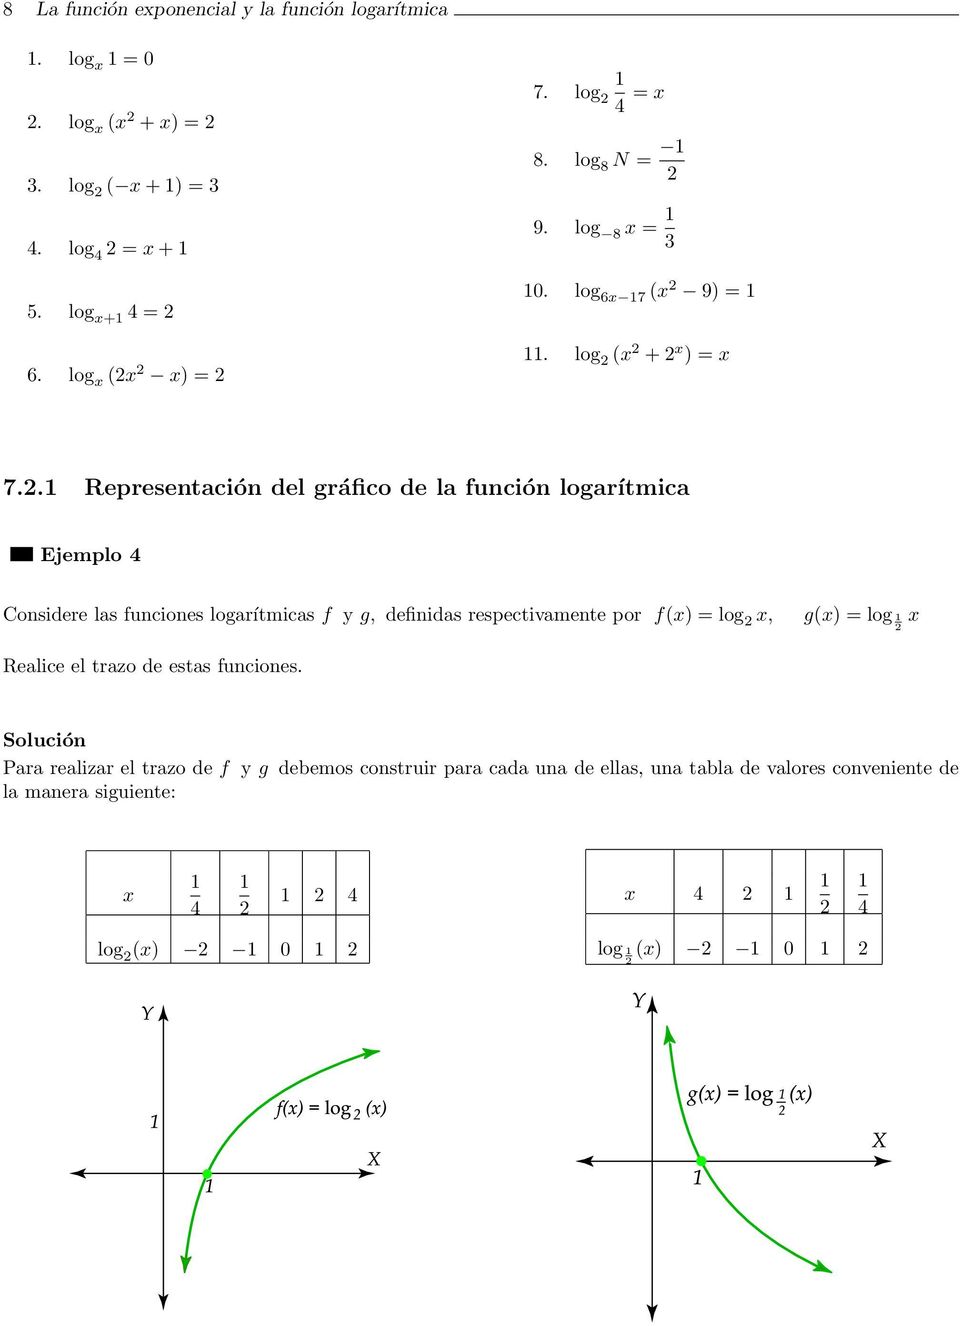 .1 Representación del gráfico de la función logarítmica Ejemplo 4 Considere las funciones logarítmicas f y g, definidas respectivamente por f(x) = log x, g(x)